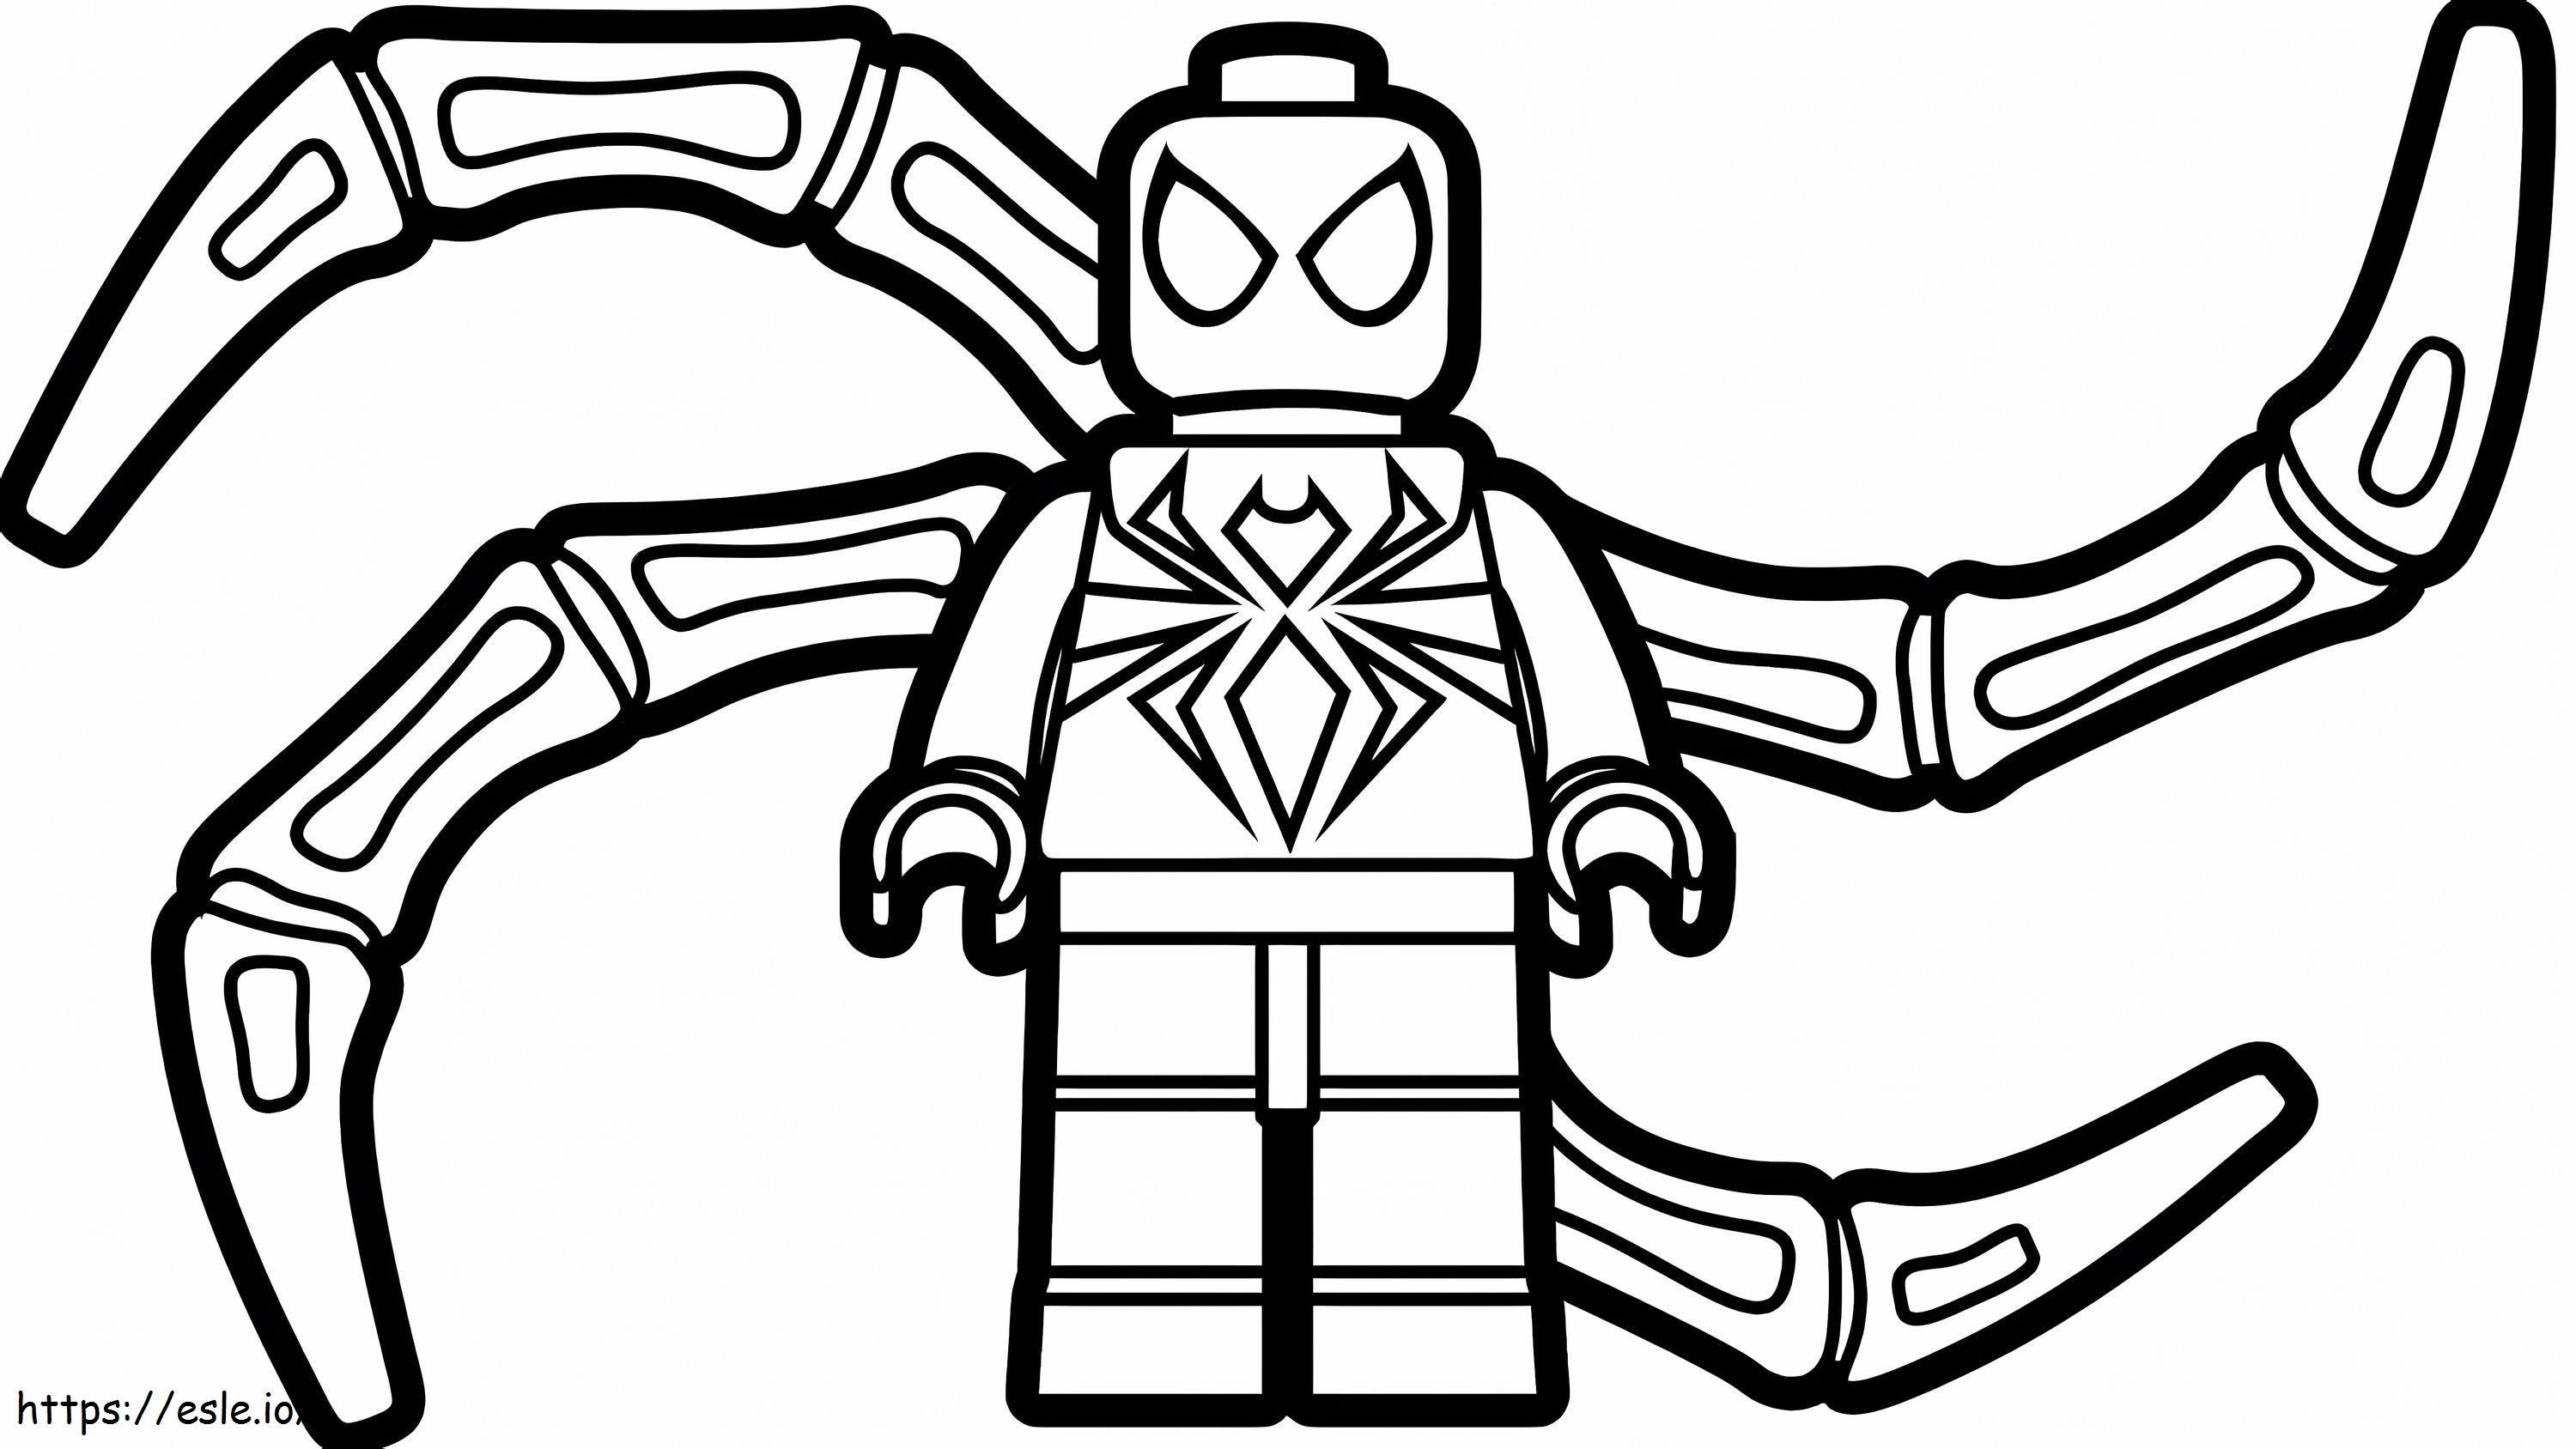 Lego Iron Spiderman kleurplaat kleurplaat